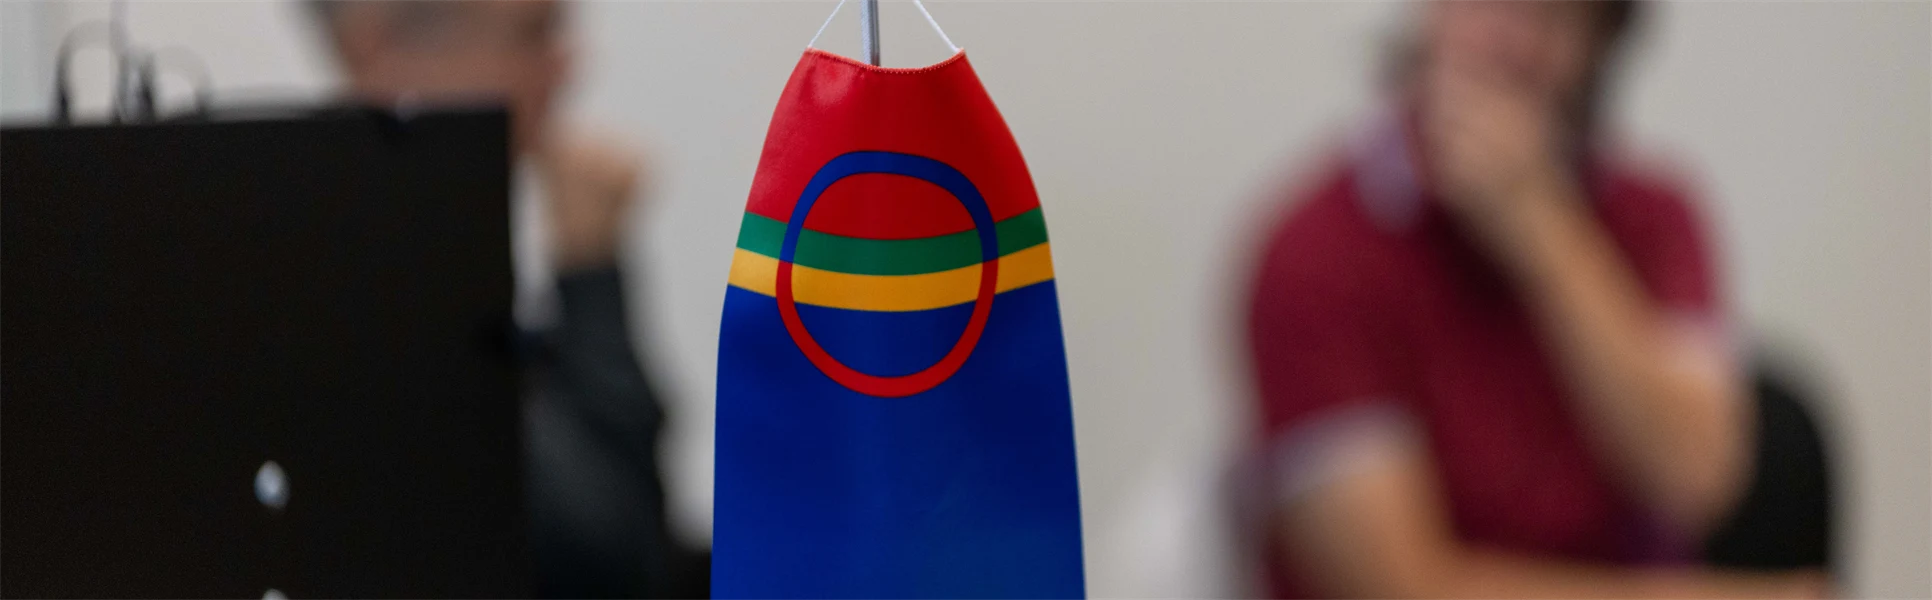 Den samiska flaggan i förgrunden och två människor utan fokus i bakgrunden